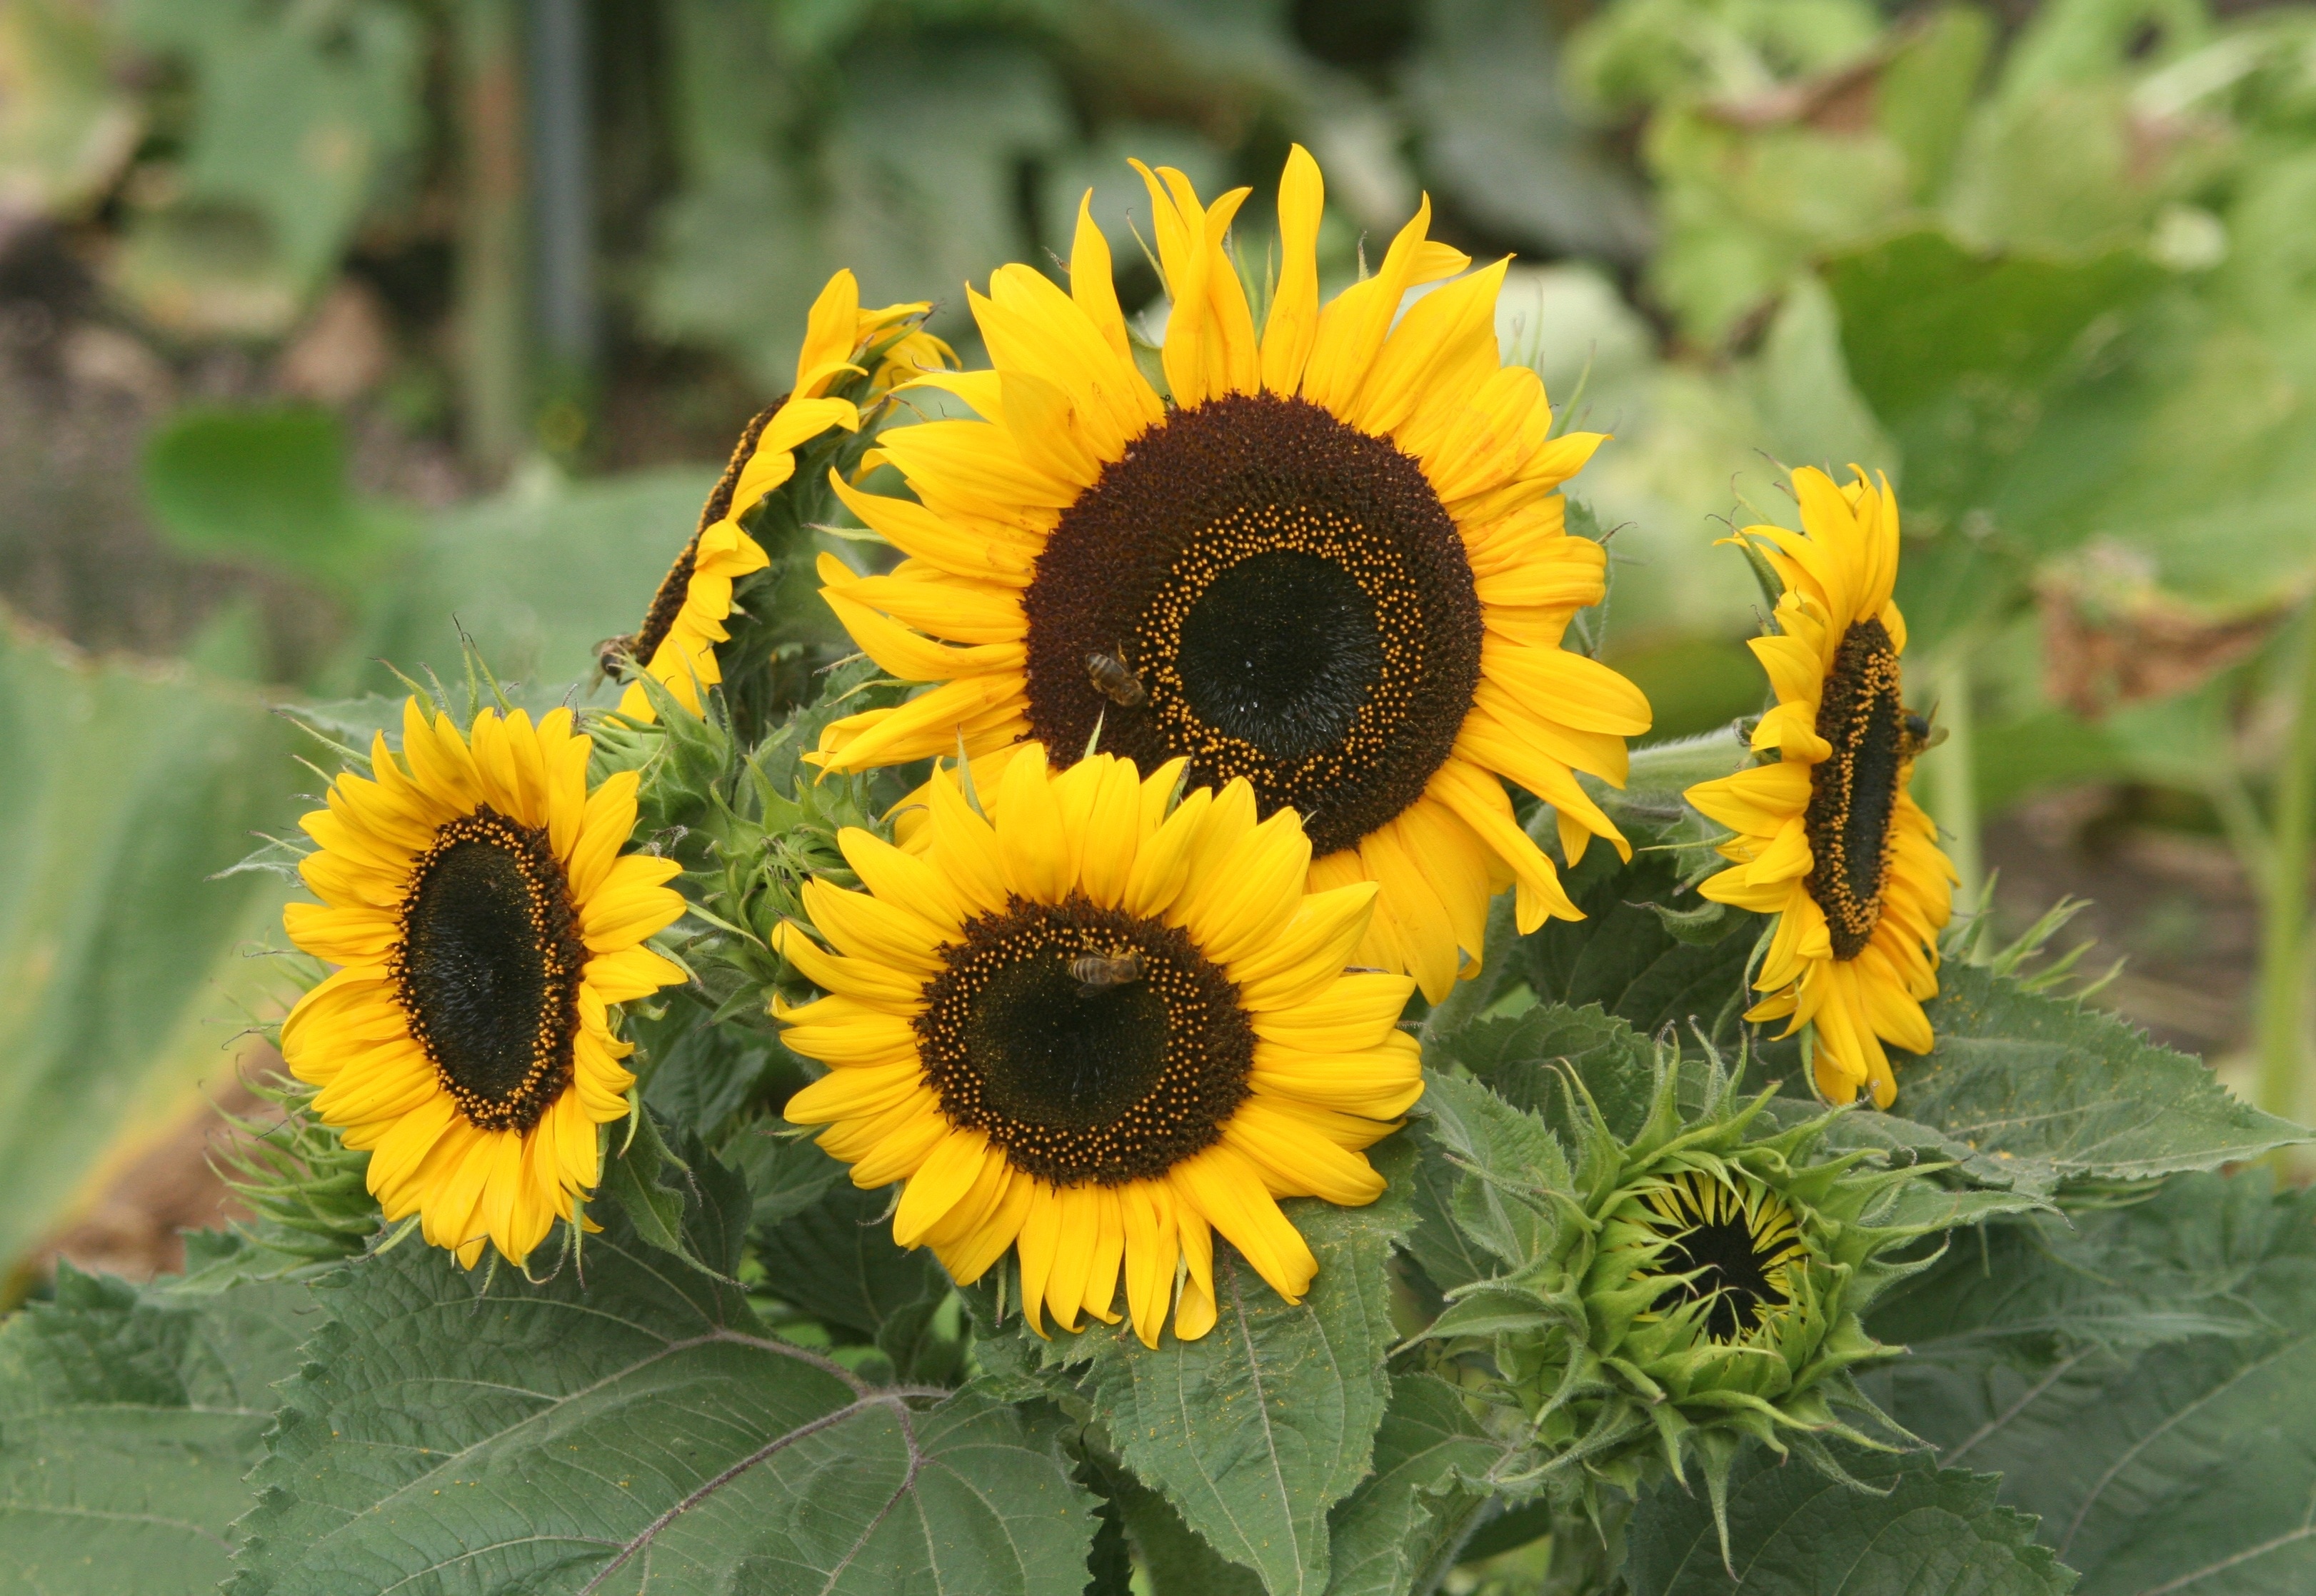 5 sunflowers